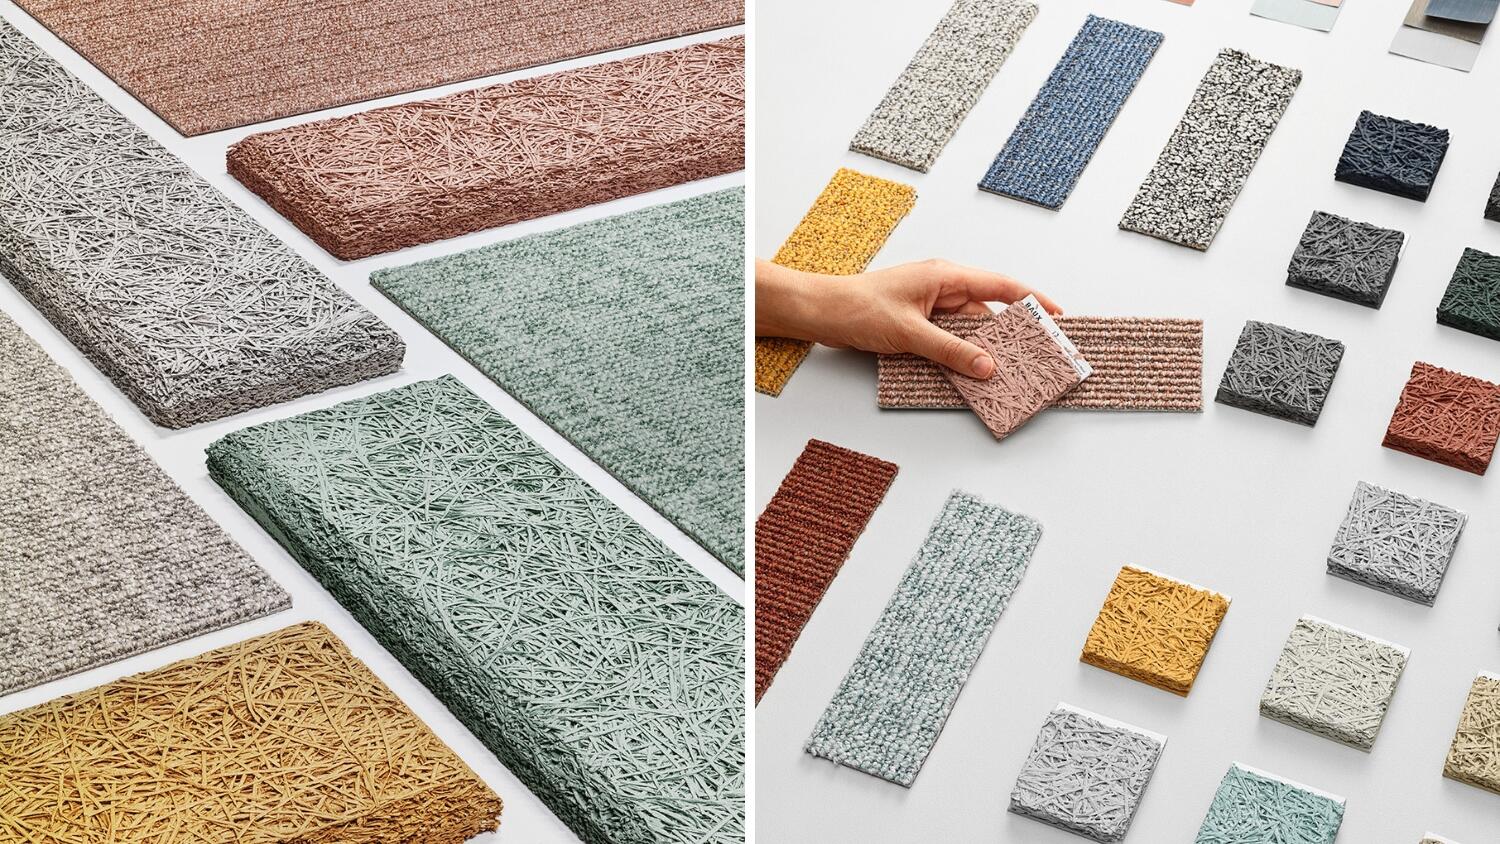 DESSO Carpet tiles with BAUX acoustic panels behind the scenes